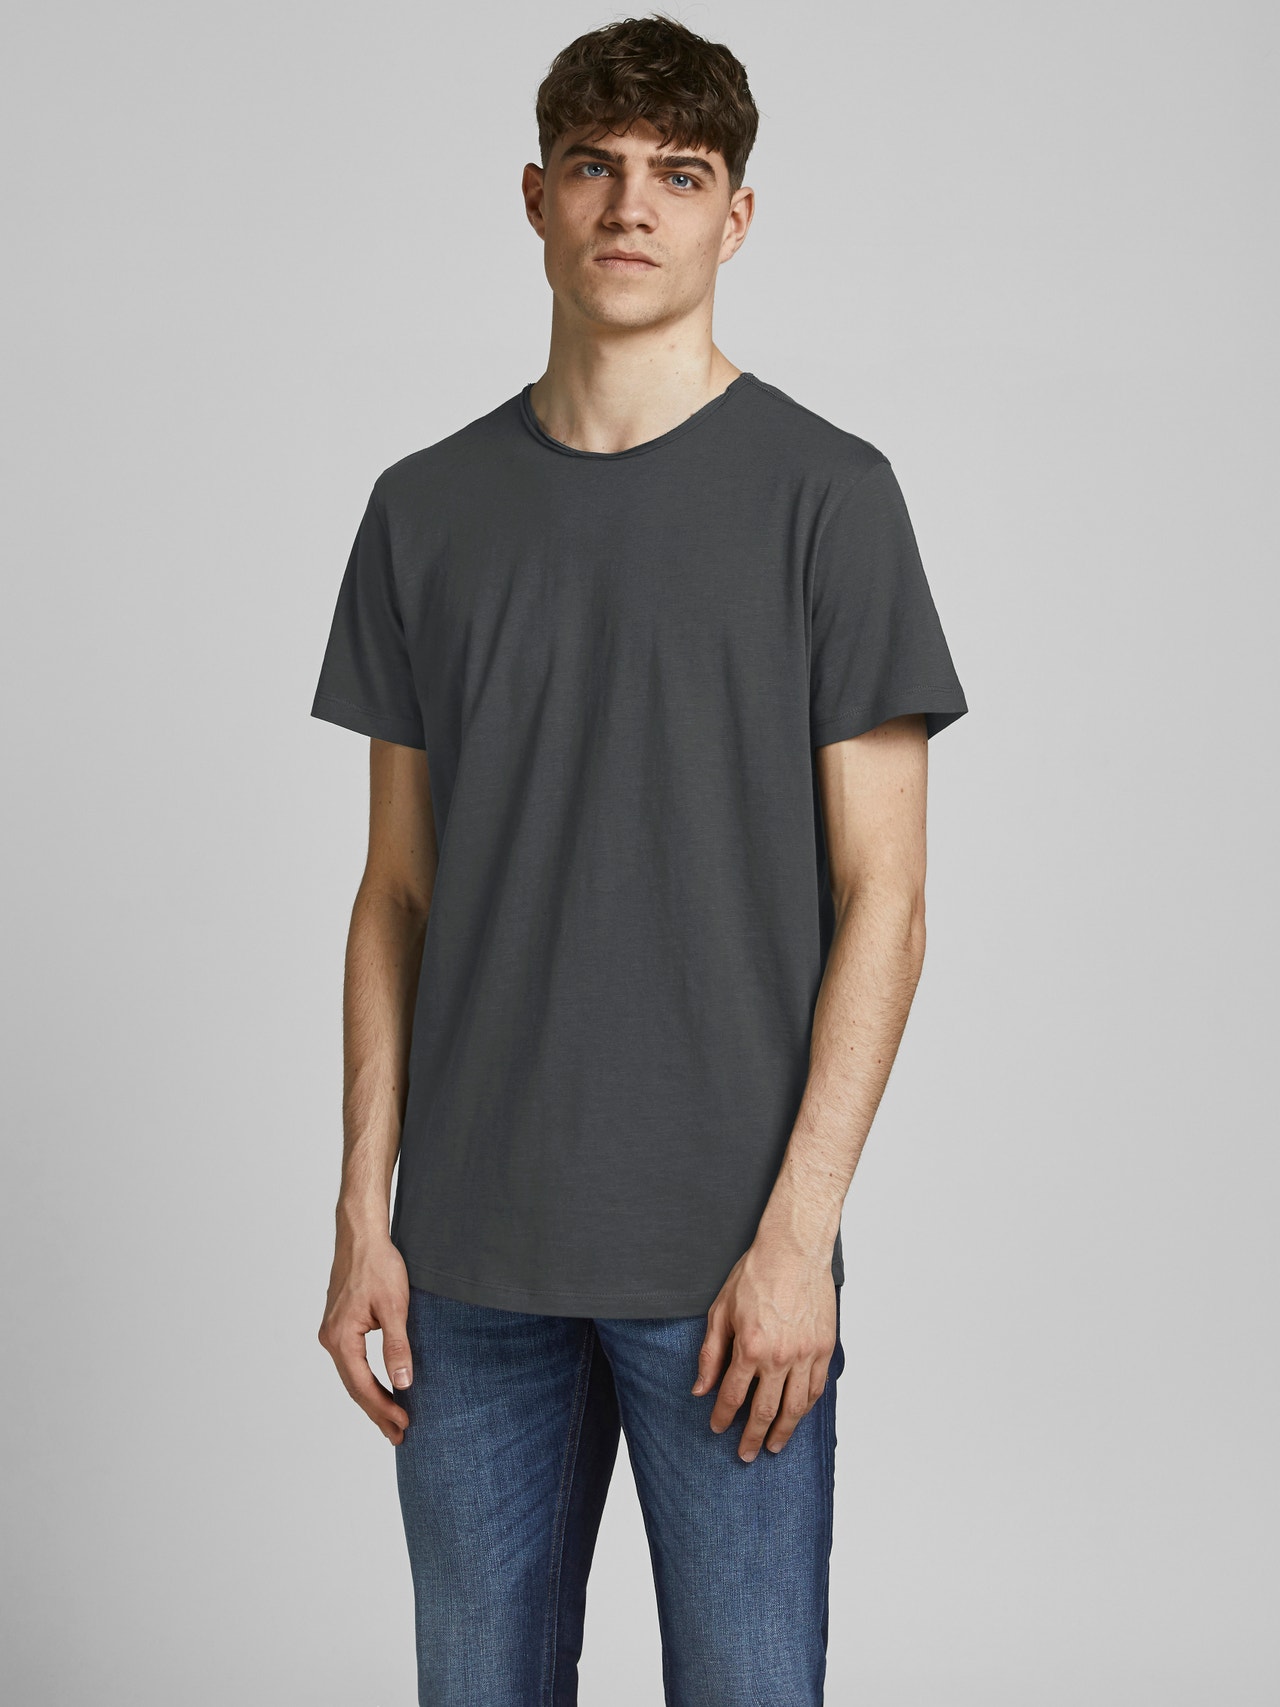 Jack & Jones Plain O-Neck T-shirt -Asphalt - 12182498